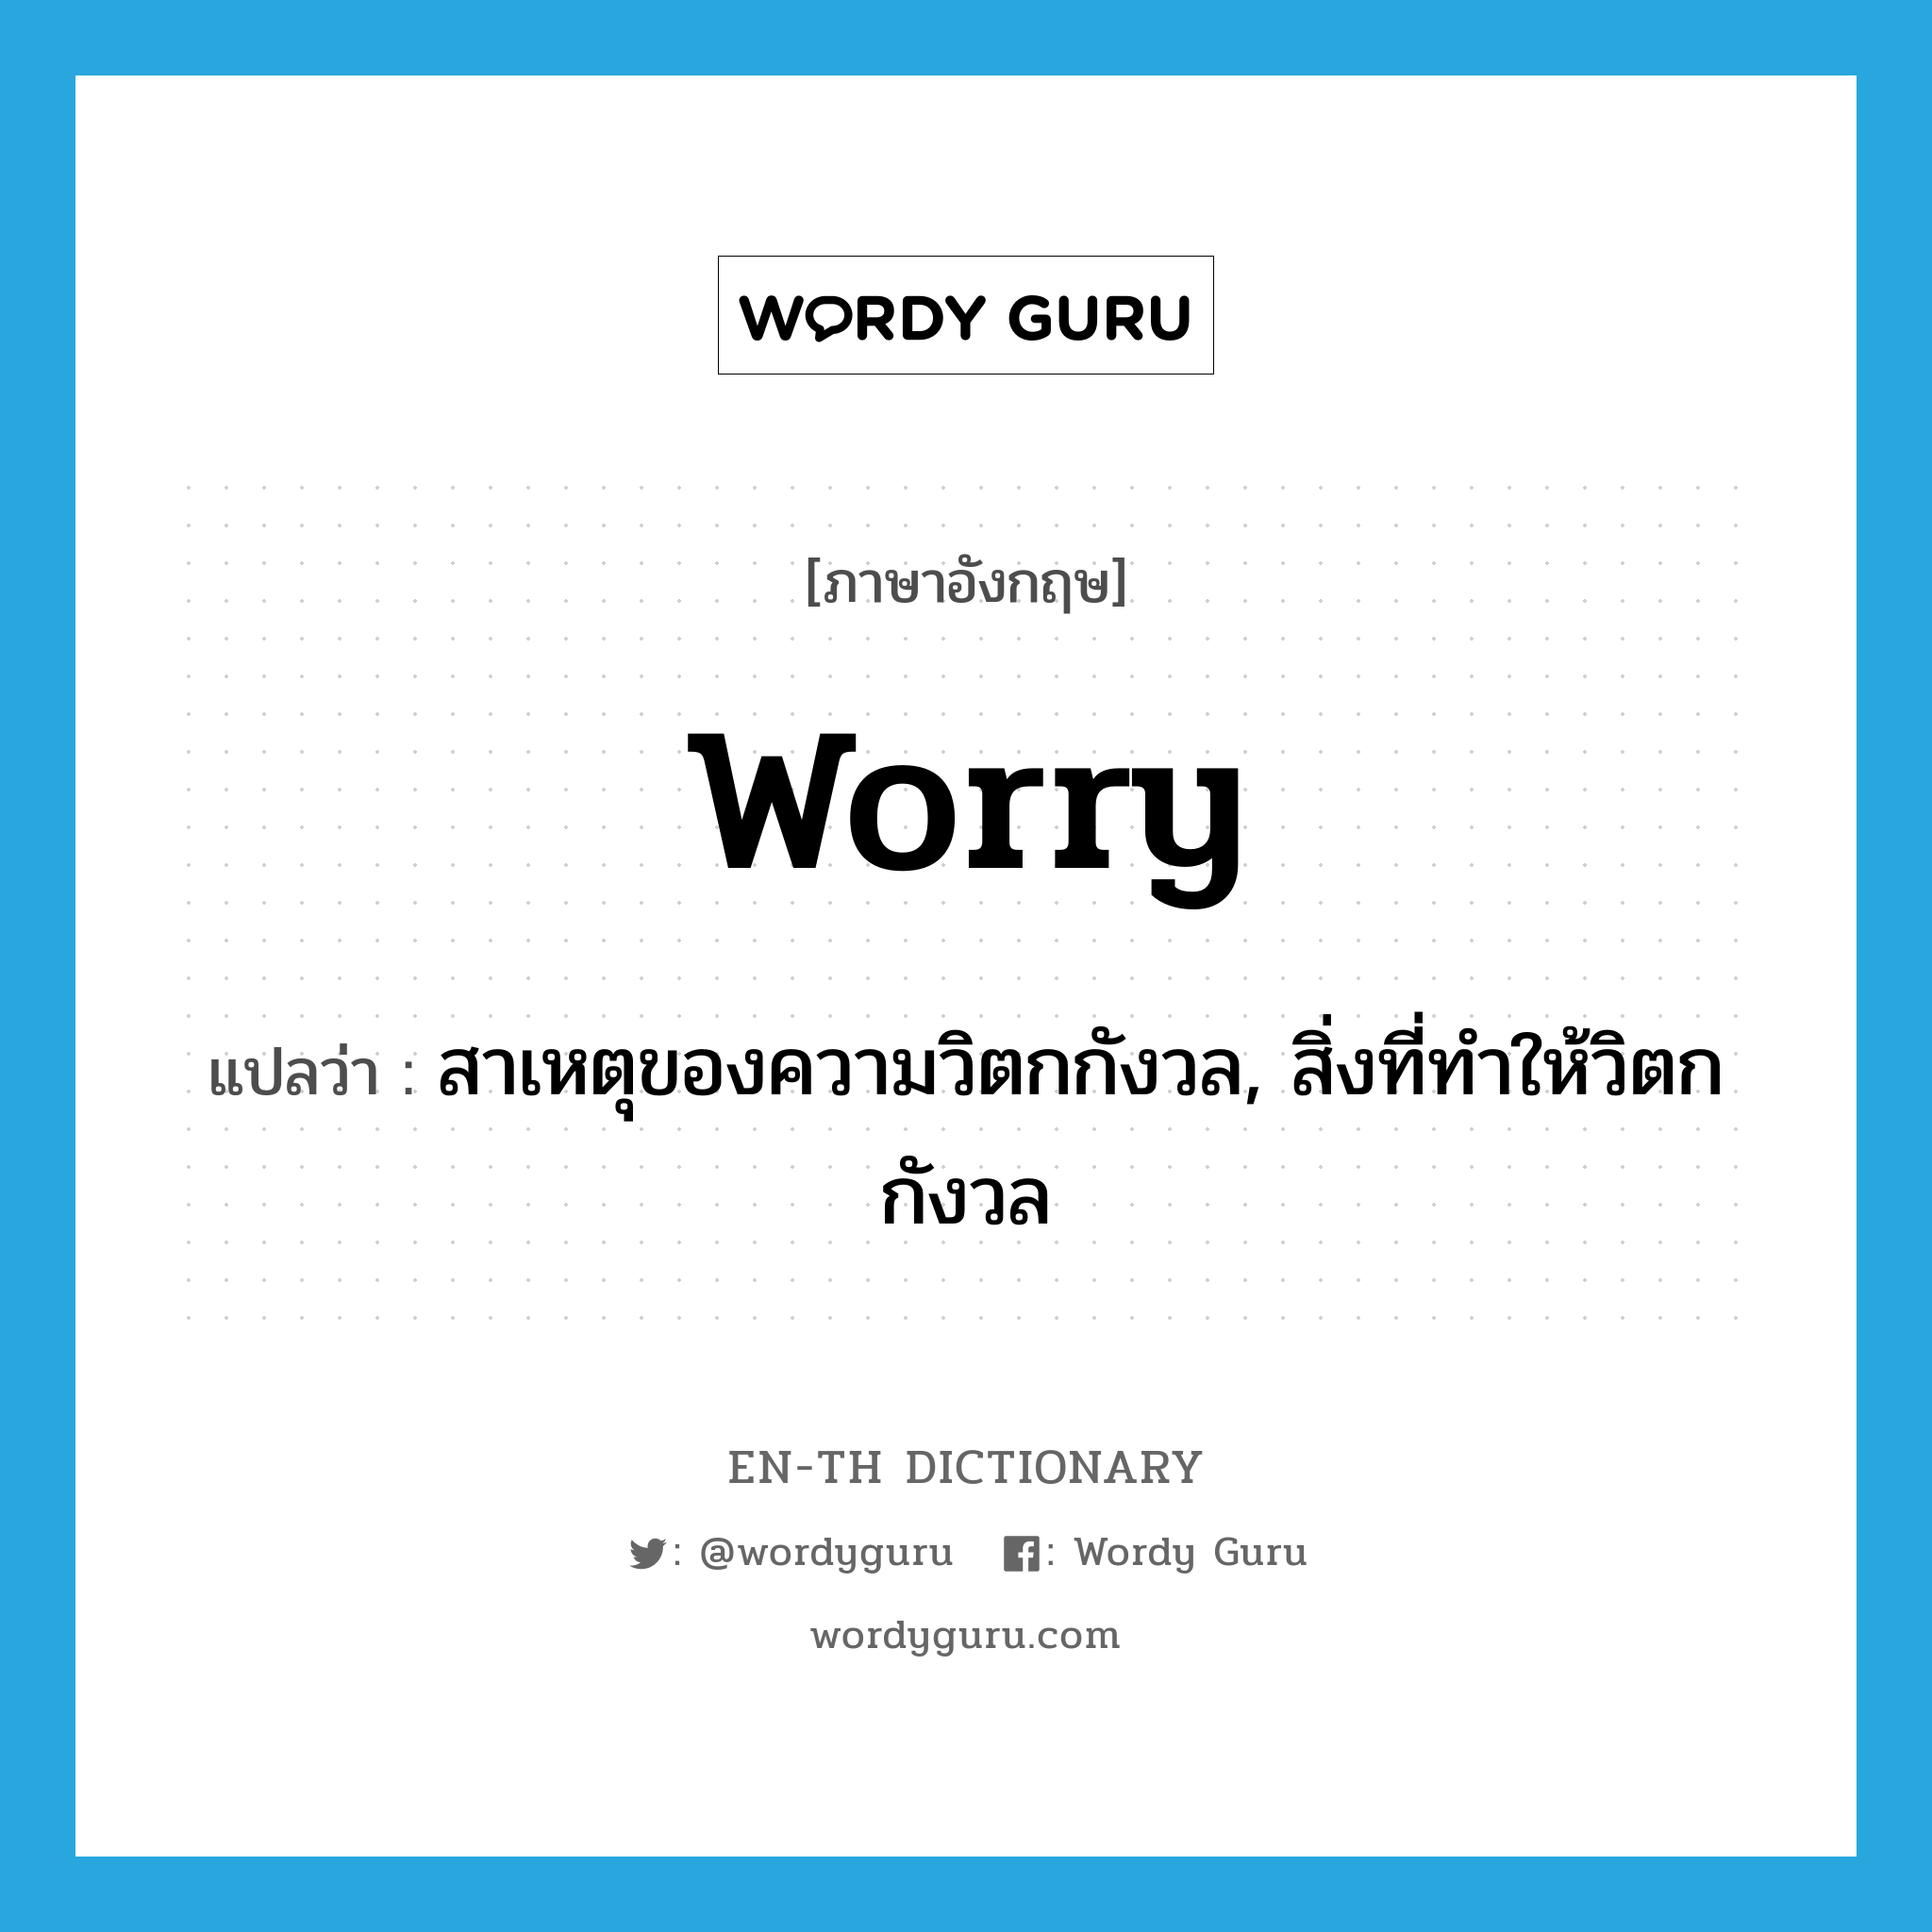 สาเหตุของความวิตกกังวล, สิ่งที่ทำให้วิตกกังวล ภาษาอังกฤษ?, คำศัพท์ภาษาอังกฤษ สาเหตุของความวิตกกังวล, สิ่งที่ทำให้วิตกกังวล แปลว่า worry ประเภท N หมวด N